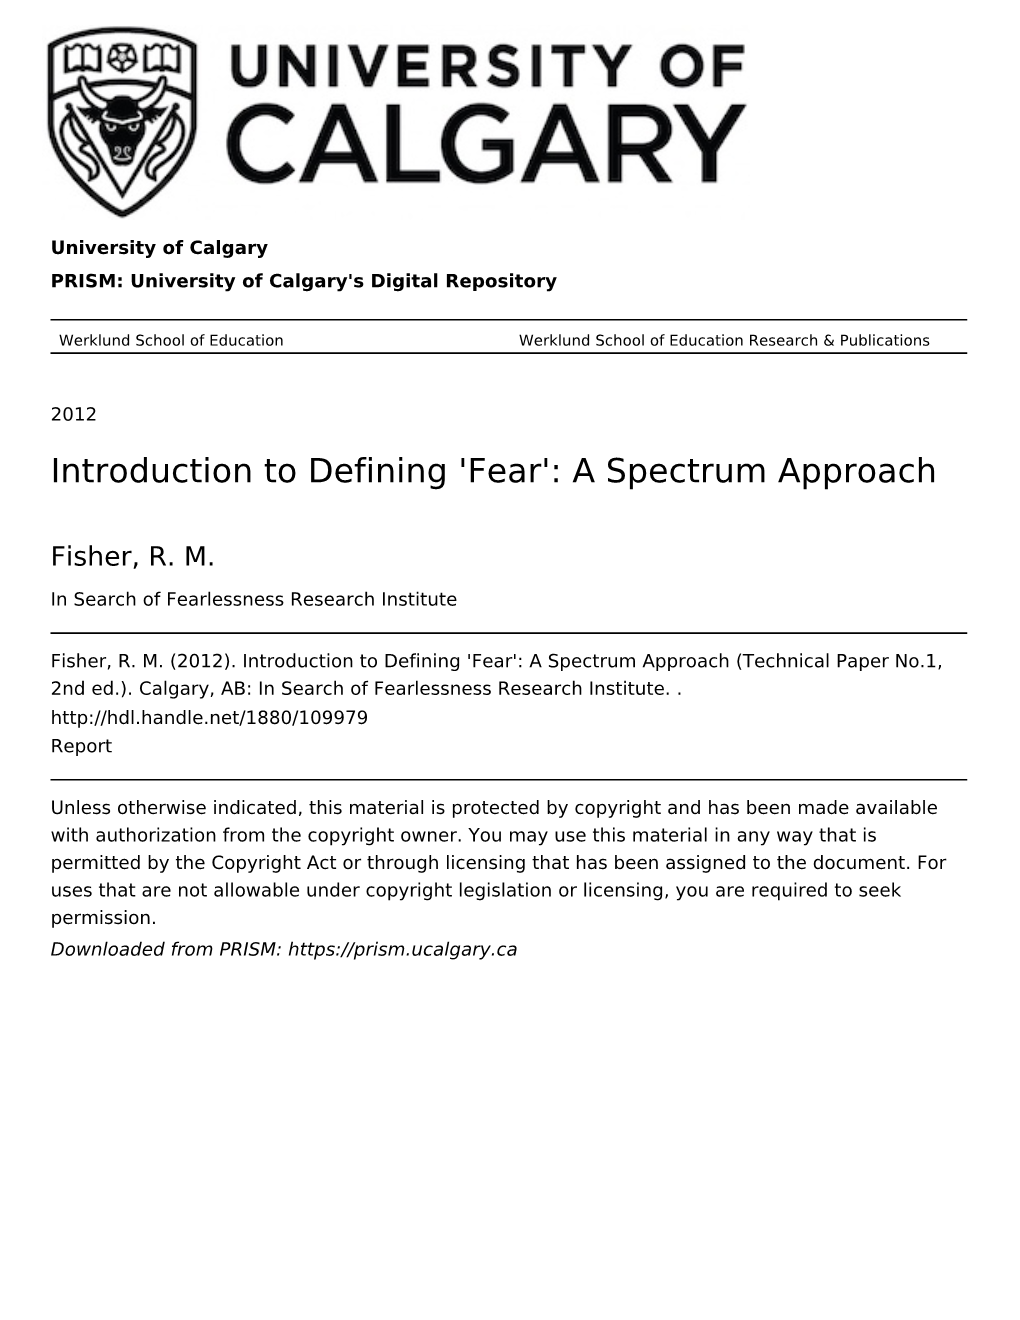 Fear': a Spectrum Approach